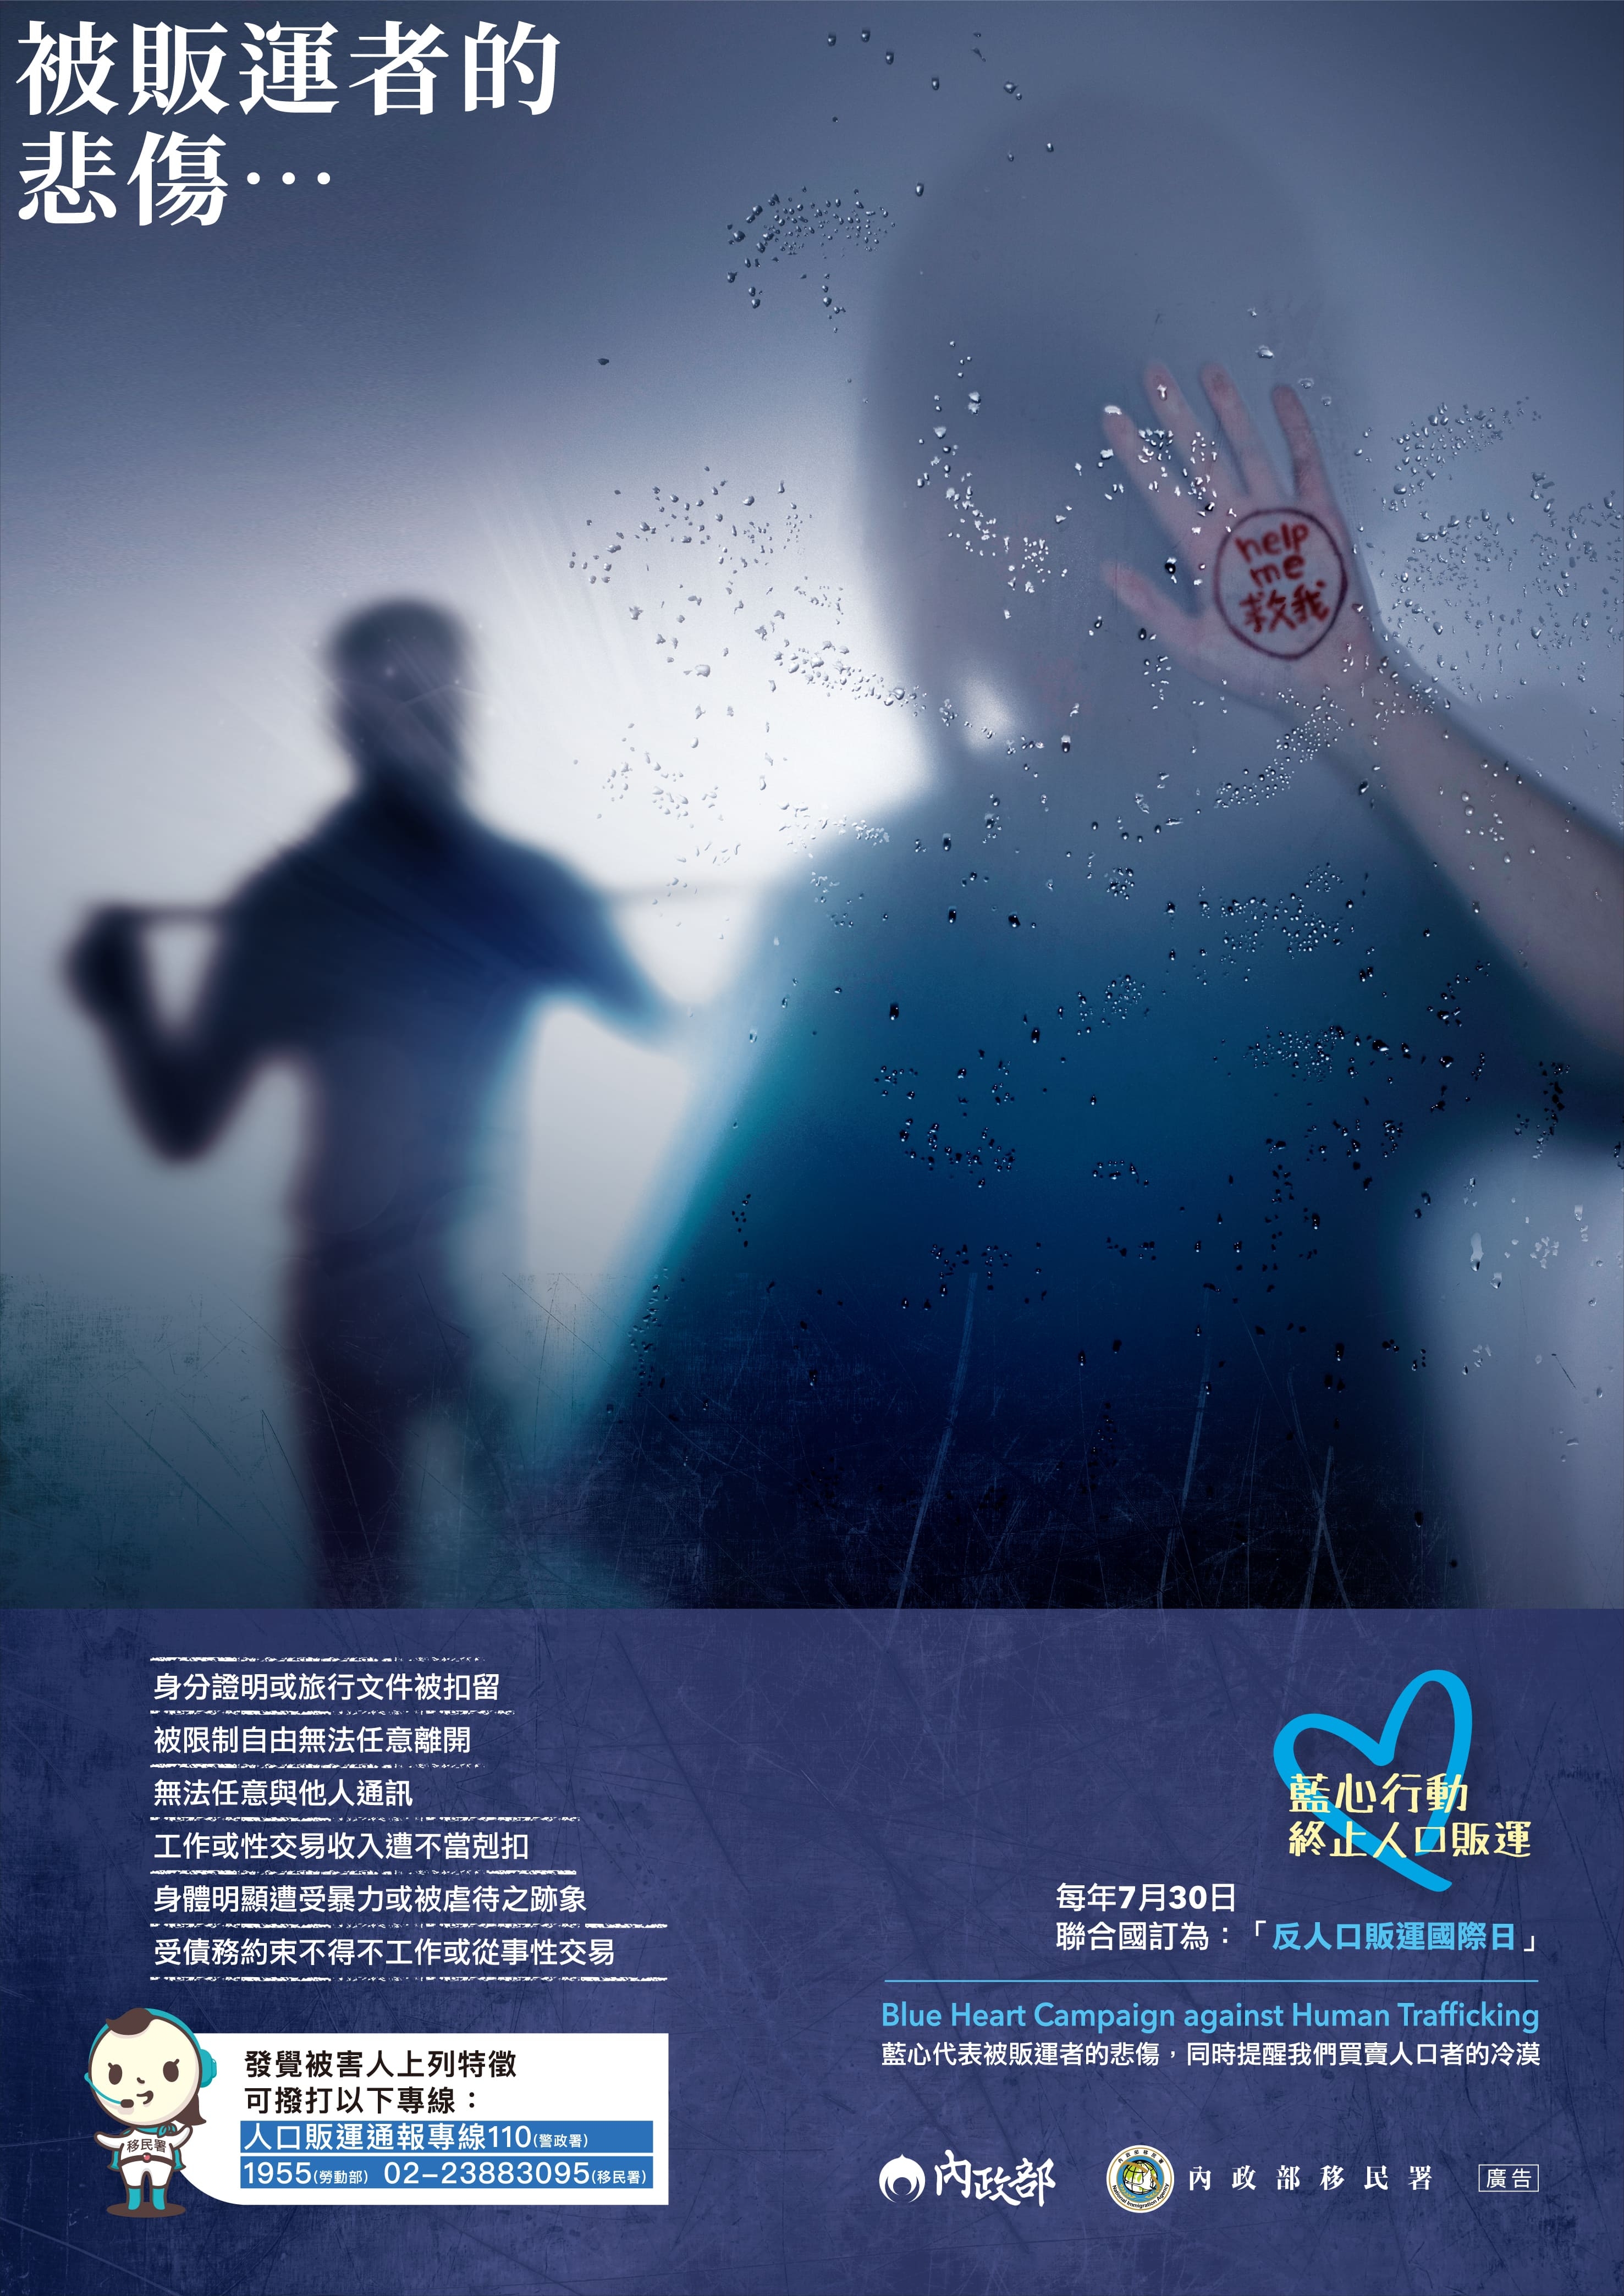 防制人口販運宣導海報-辨識及通報_中文版